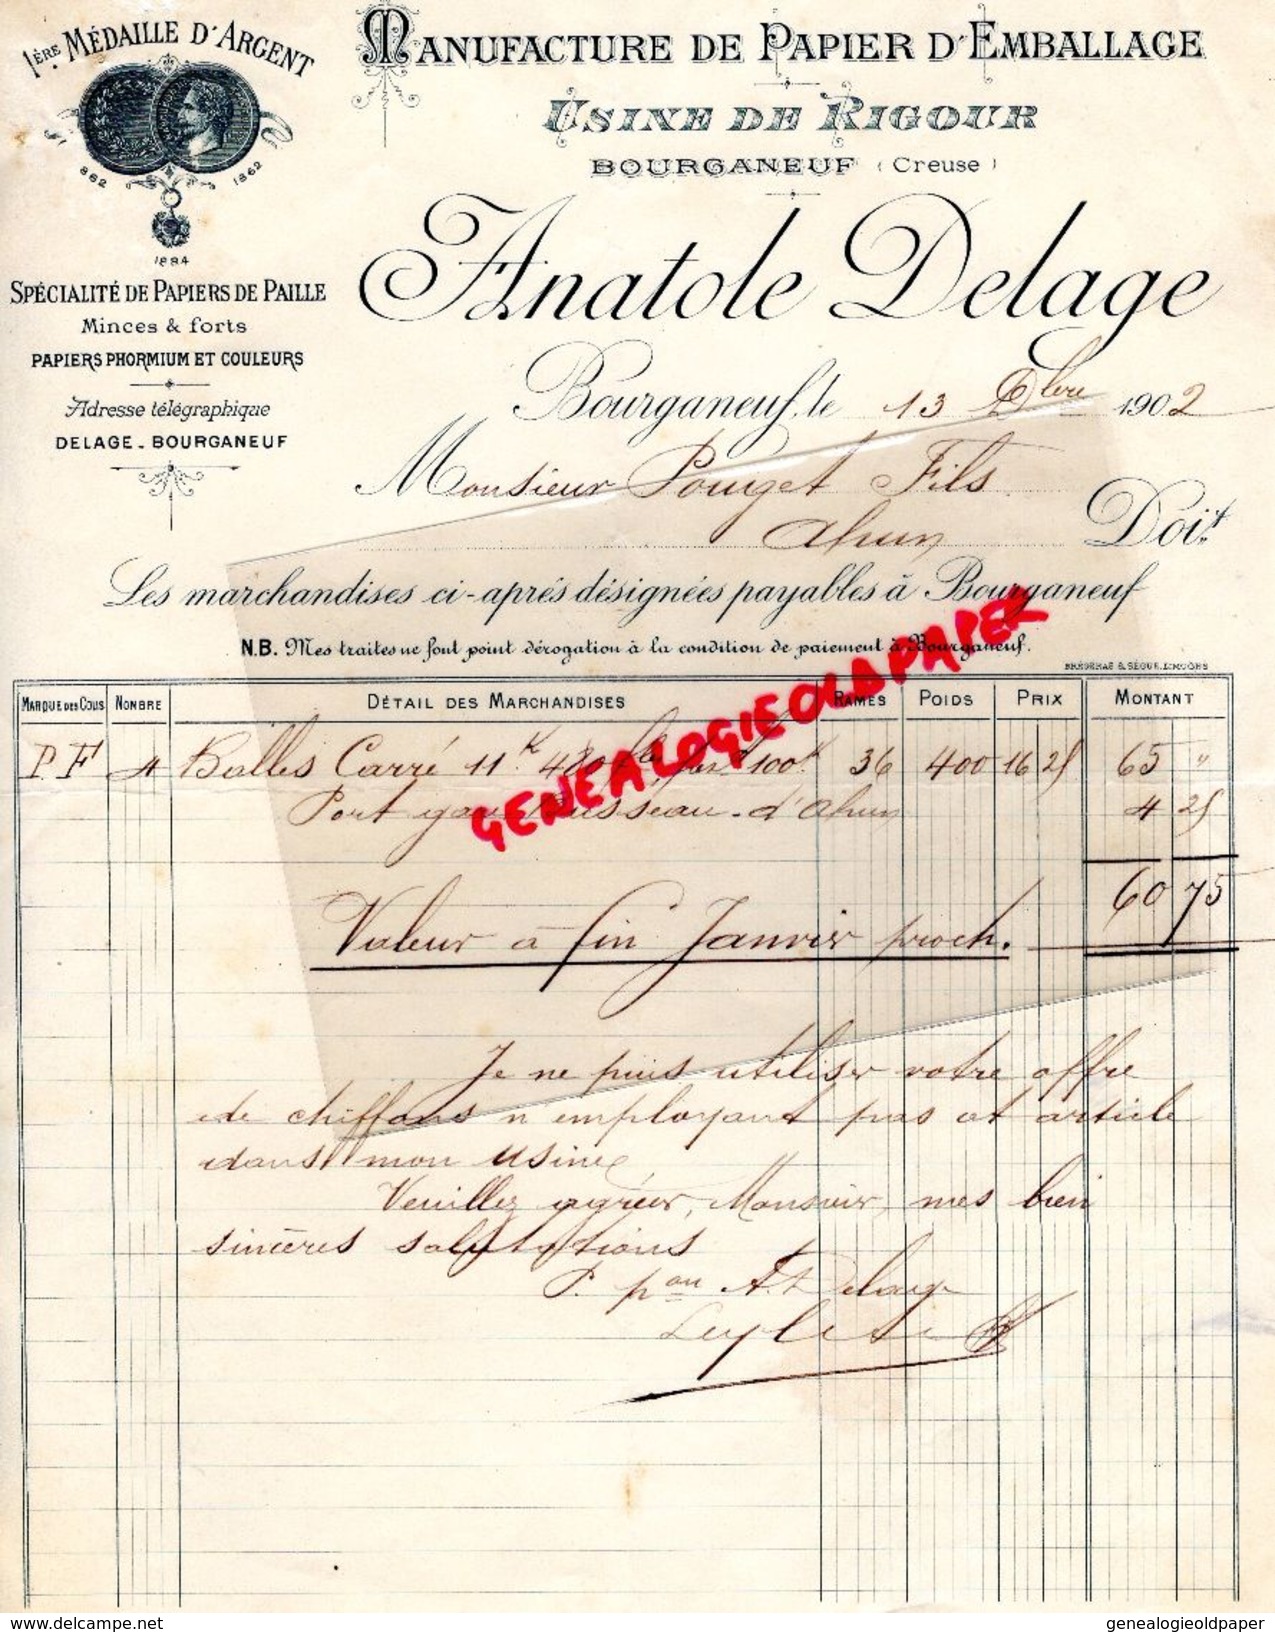 23 -BOURGANEUF - FACTURE USINE DE RIGOUR- MANUFACTURE PAPIER EMBALLAGE- ANATOLE DELAGE -PAPIERS PAILLE- PAPETERIE- 1902 - Old Professions